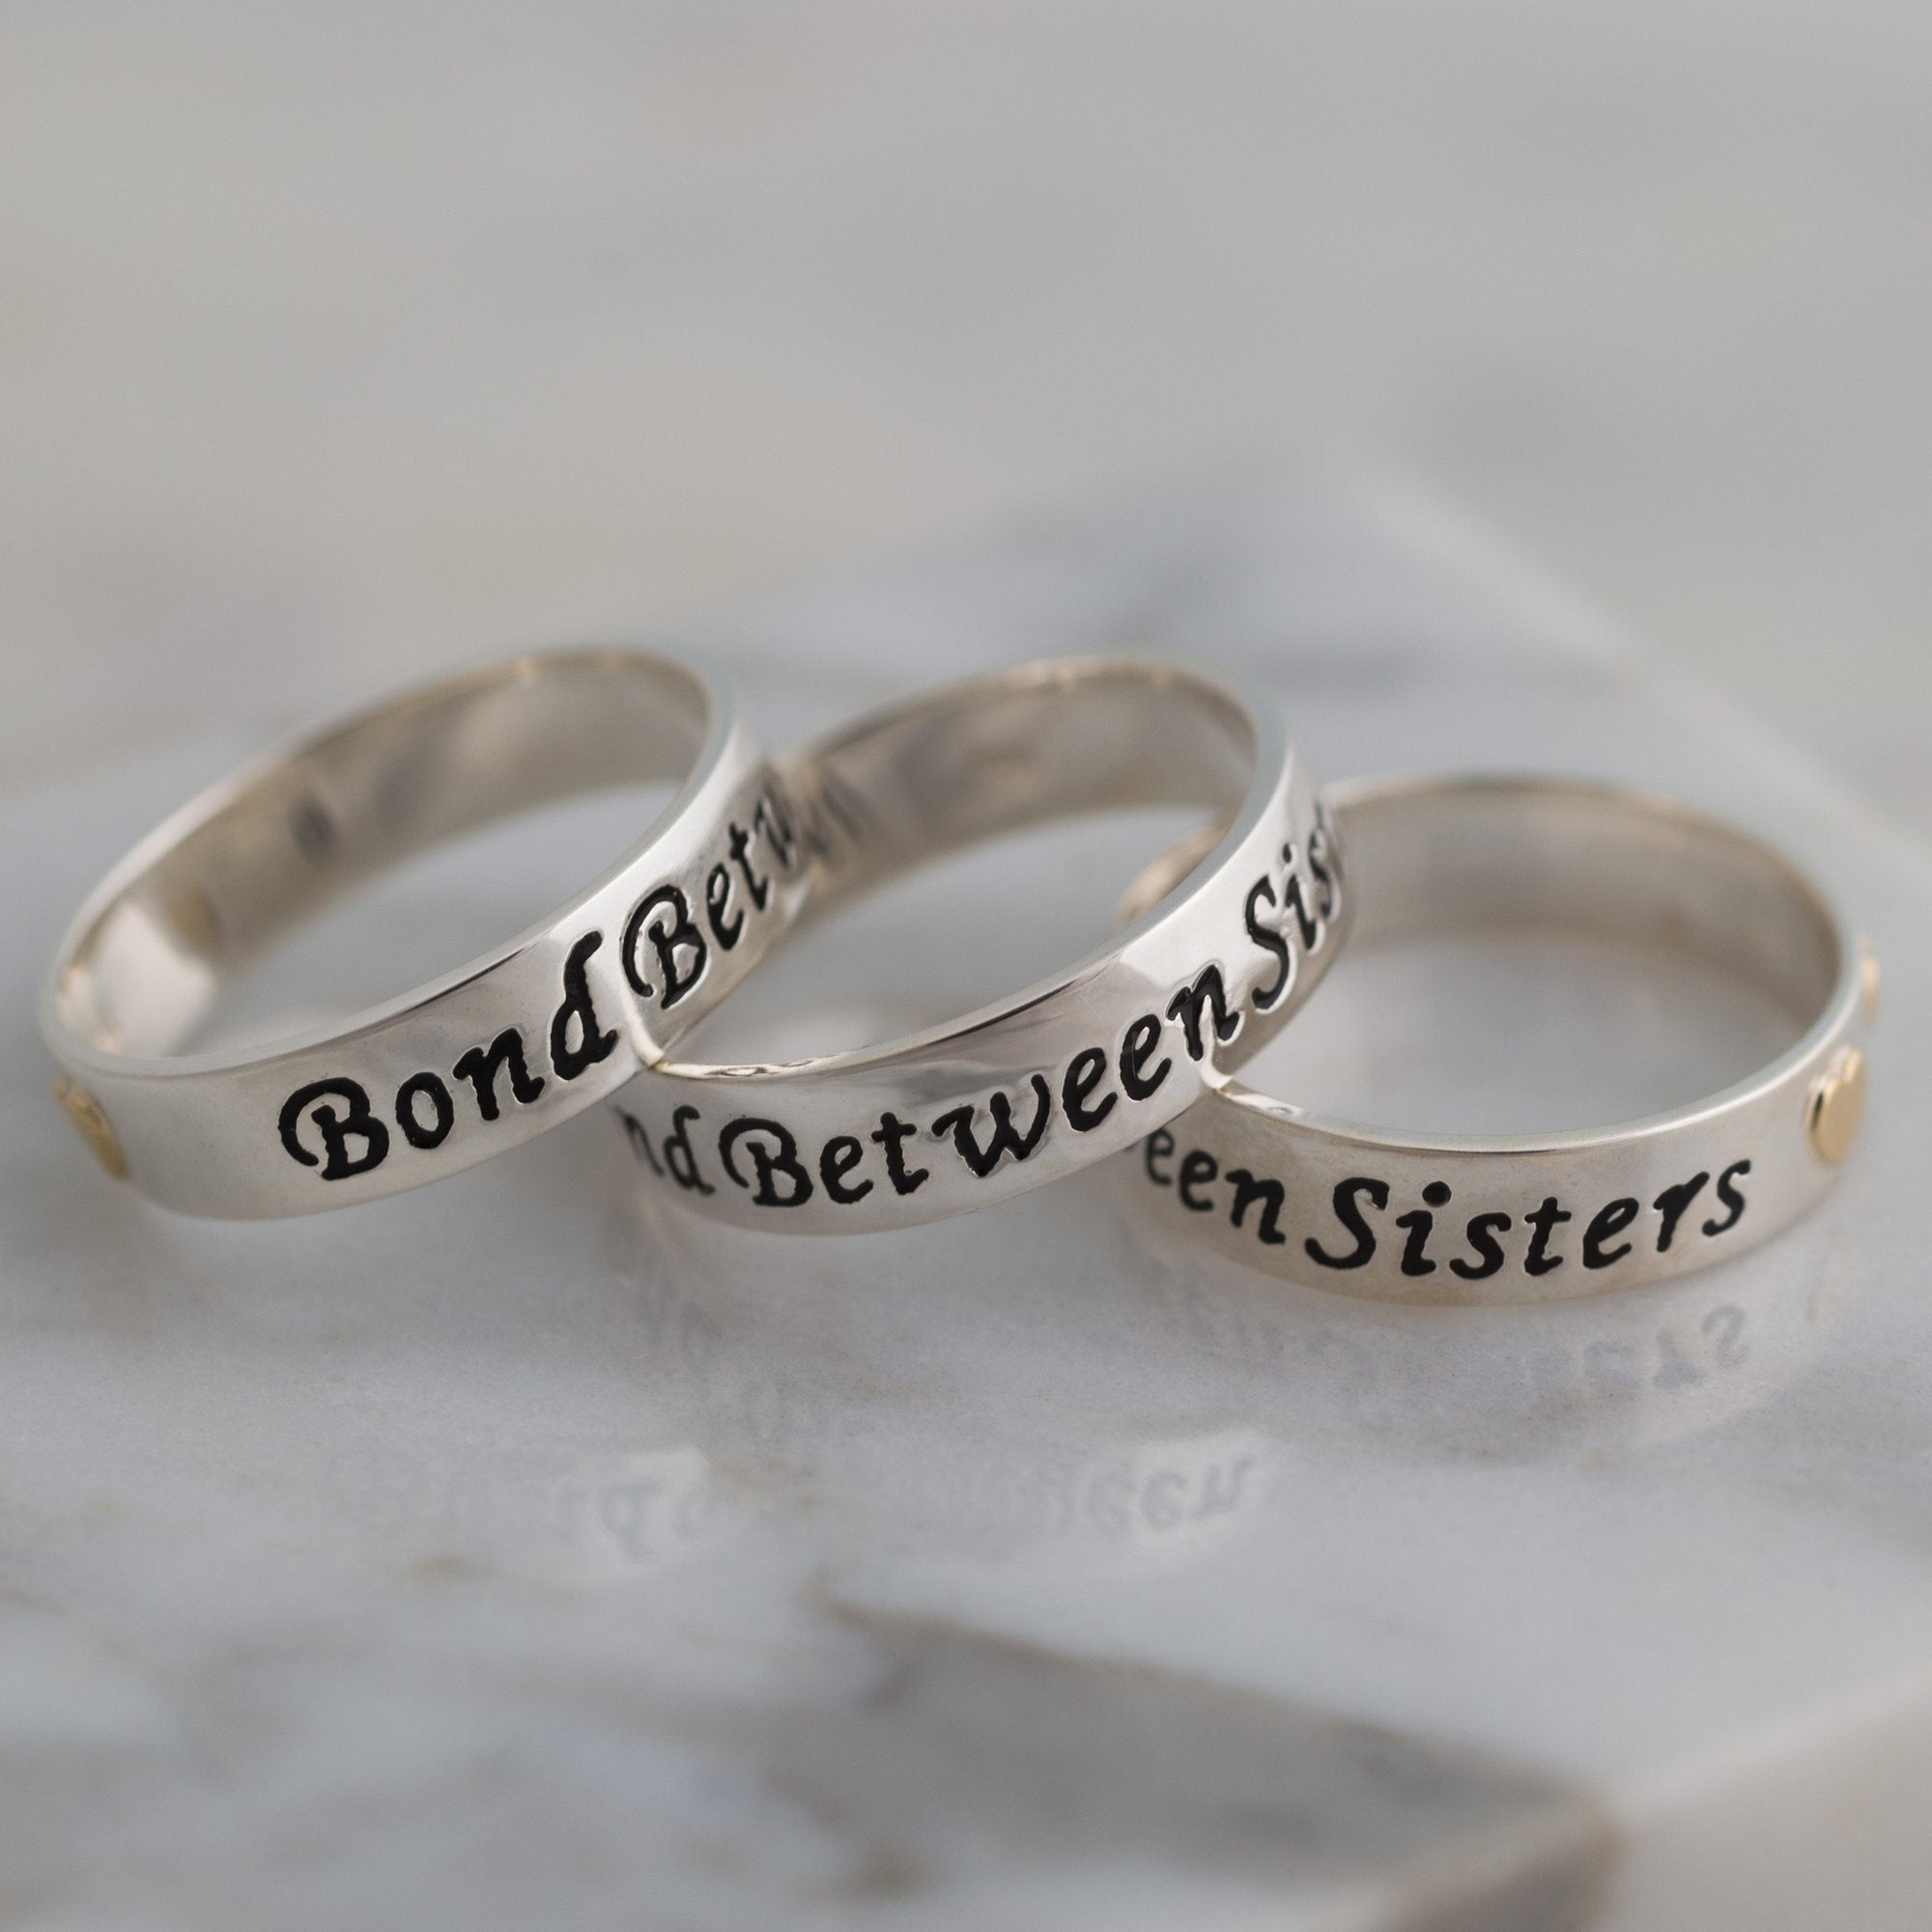 Bond Between Sisters Sterling Ring - 3 Sisters - 6